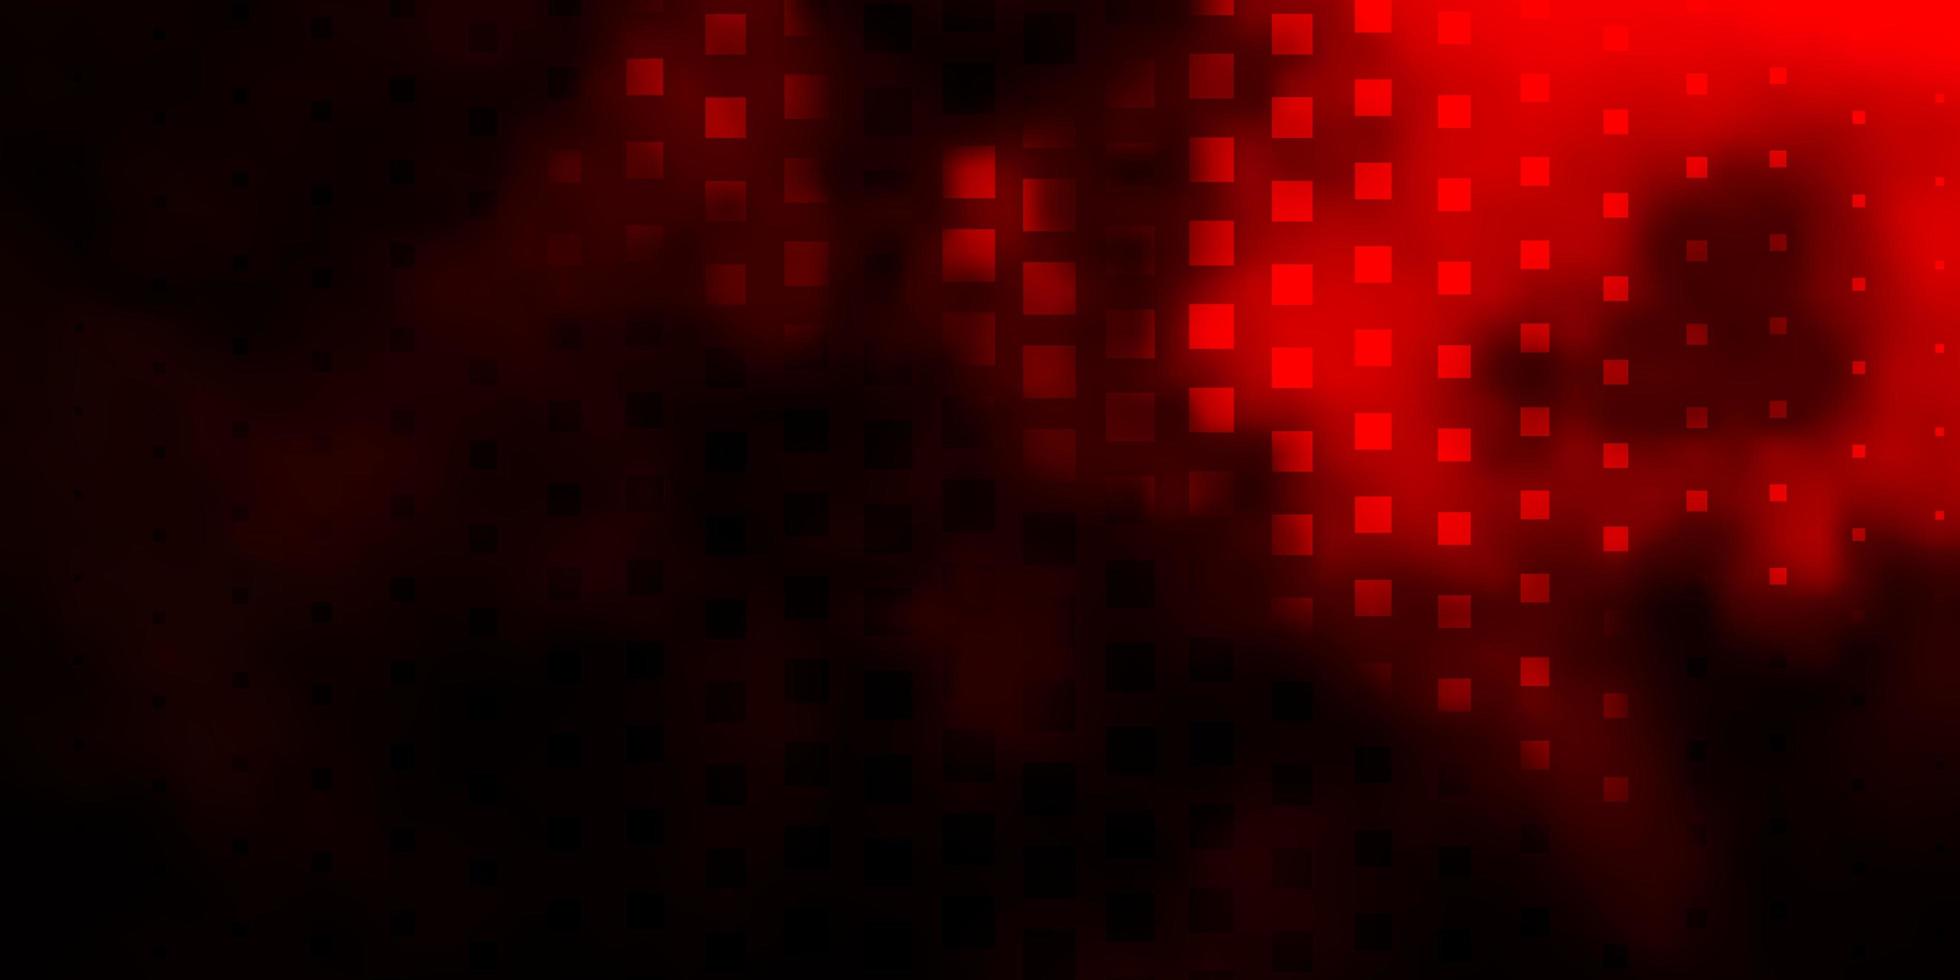 padrão de vetor vermelho escuro em estilo quadrado.